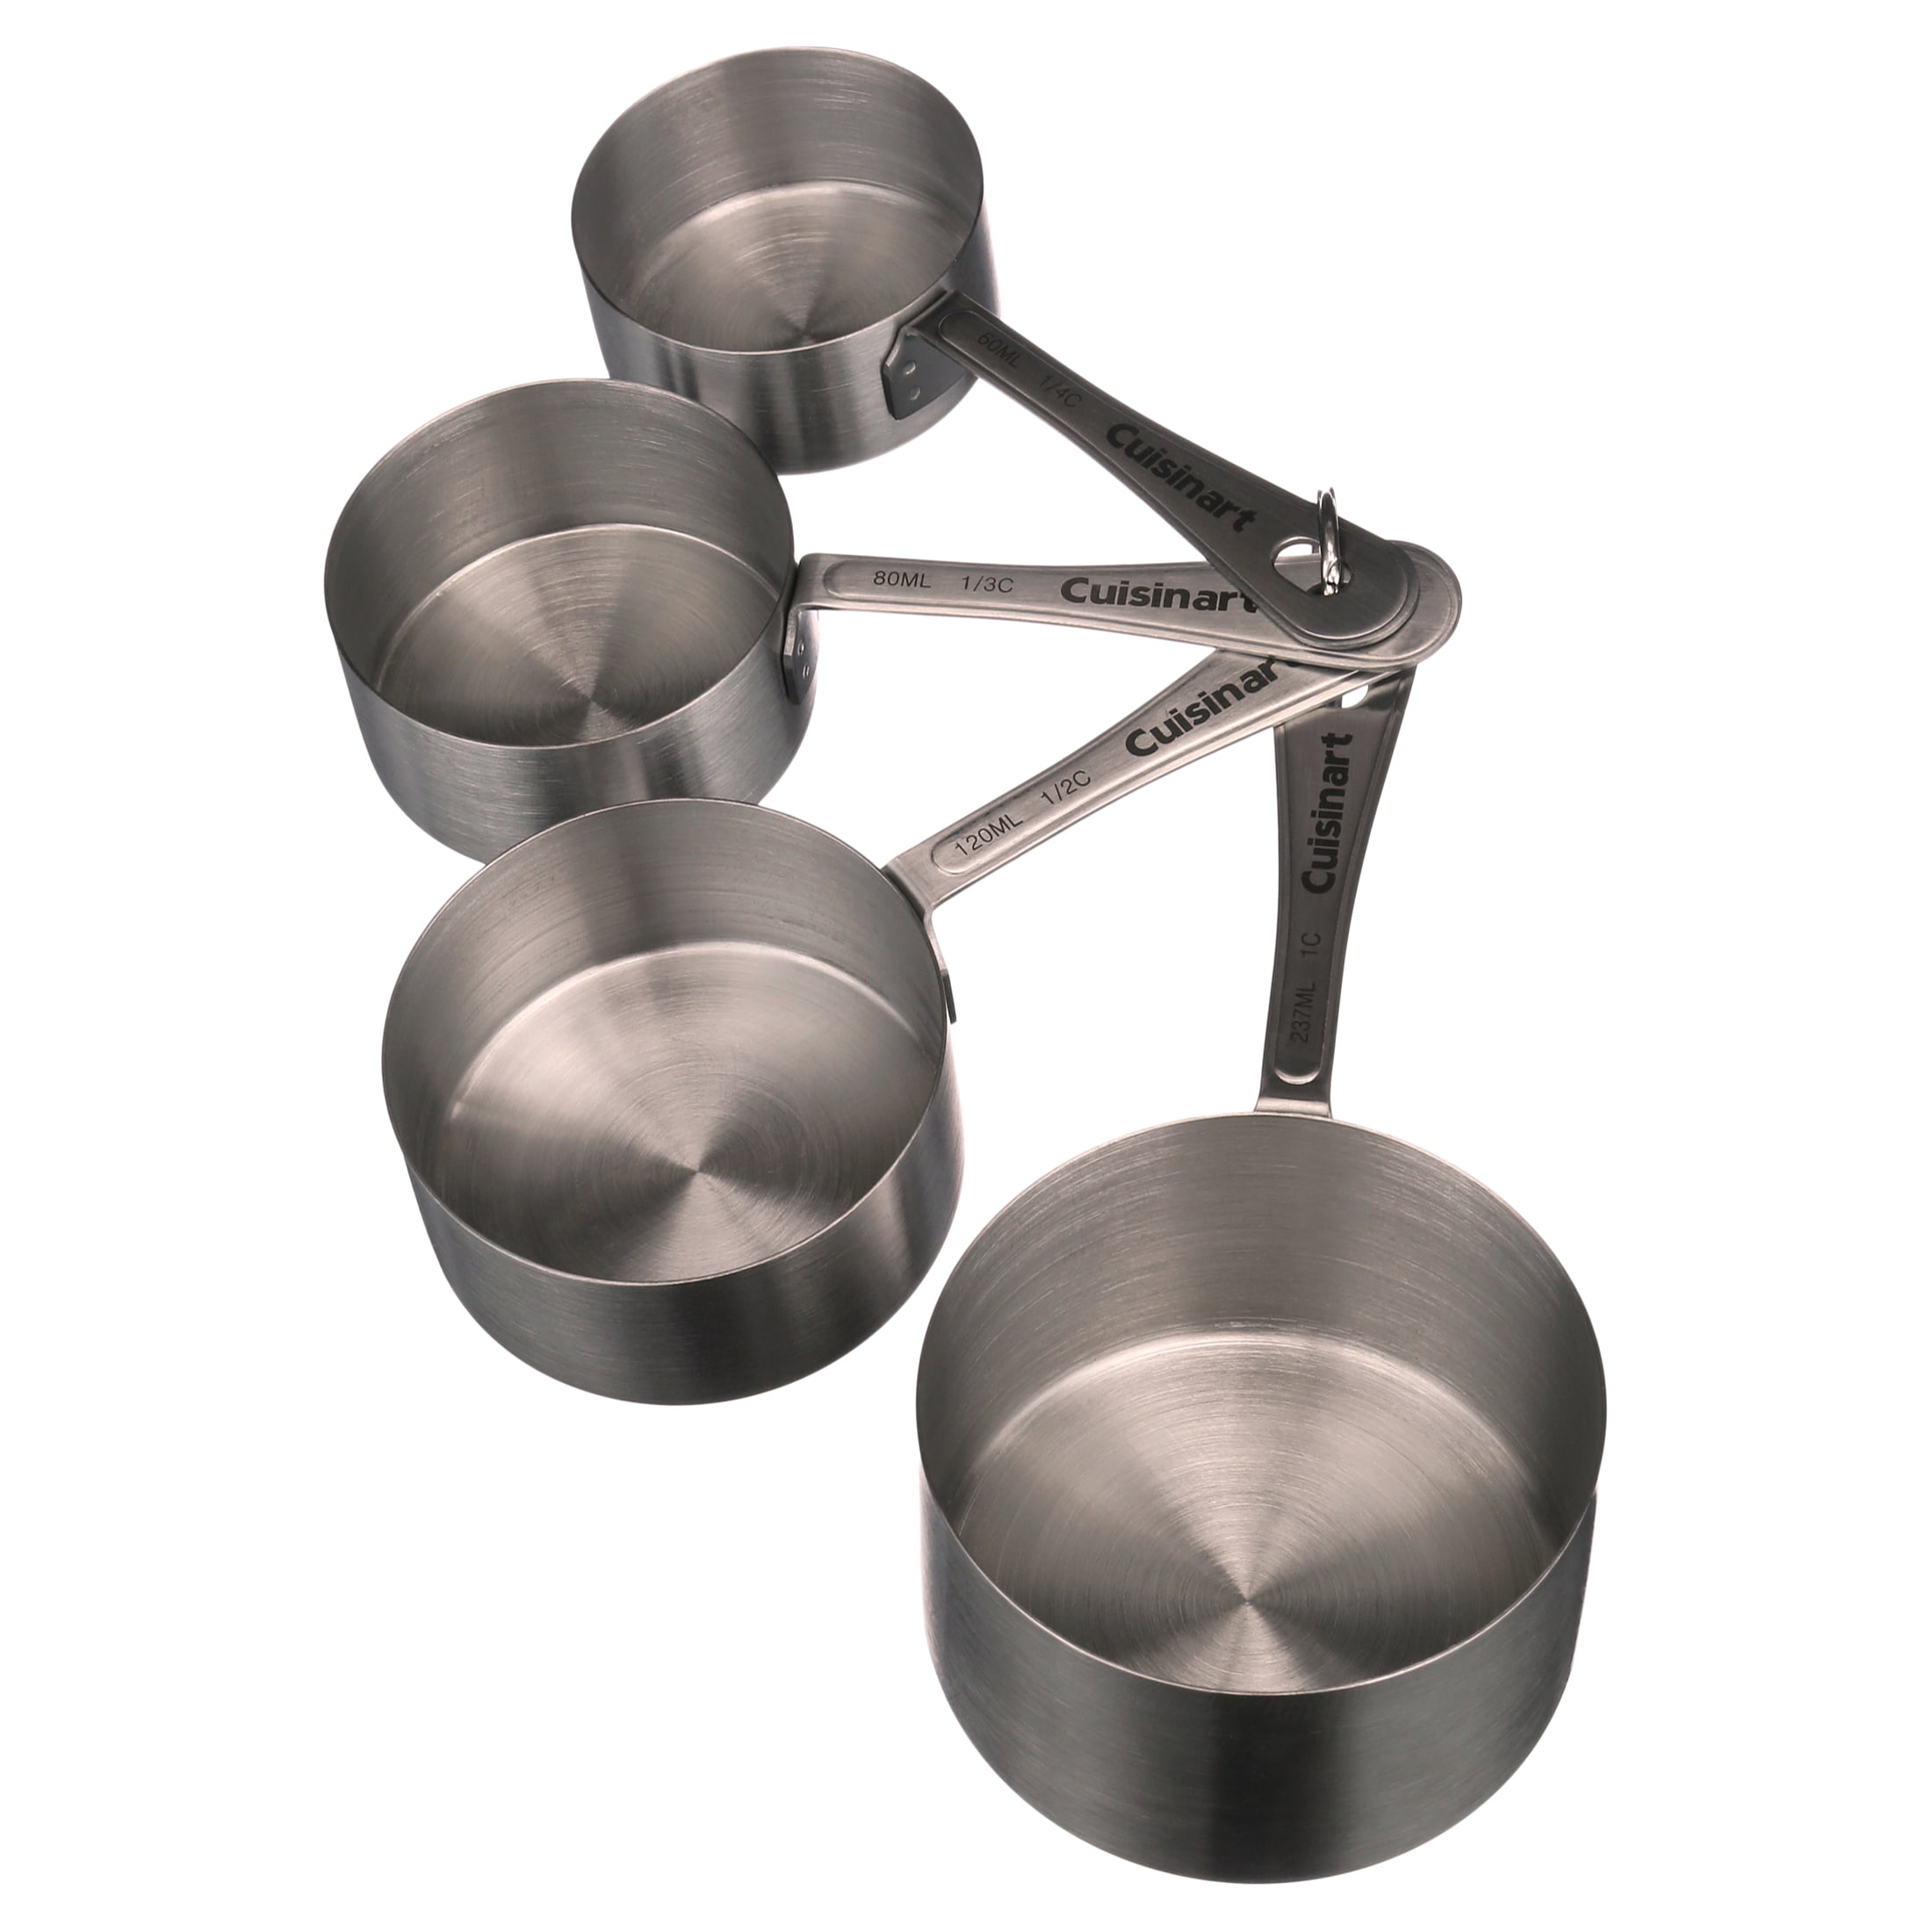 De Buyer Stainless Steel Measuring Cups – TENZO